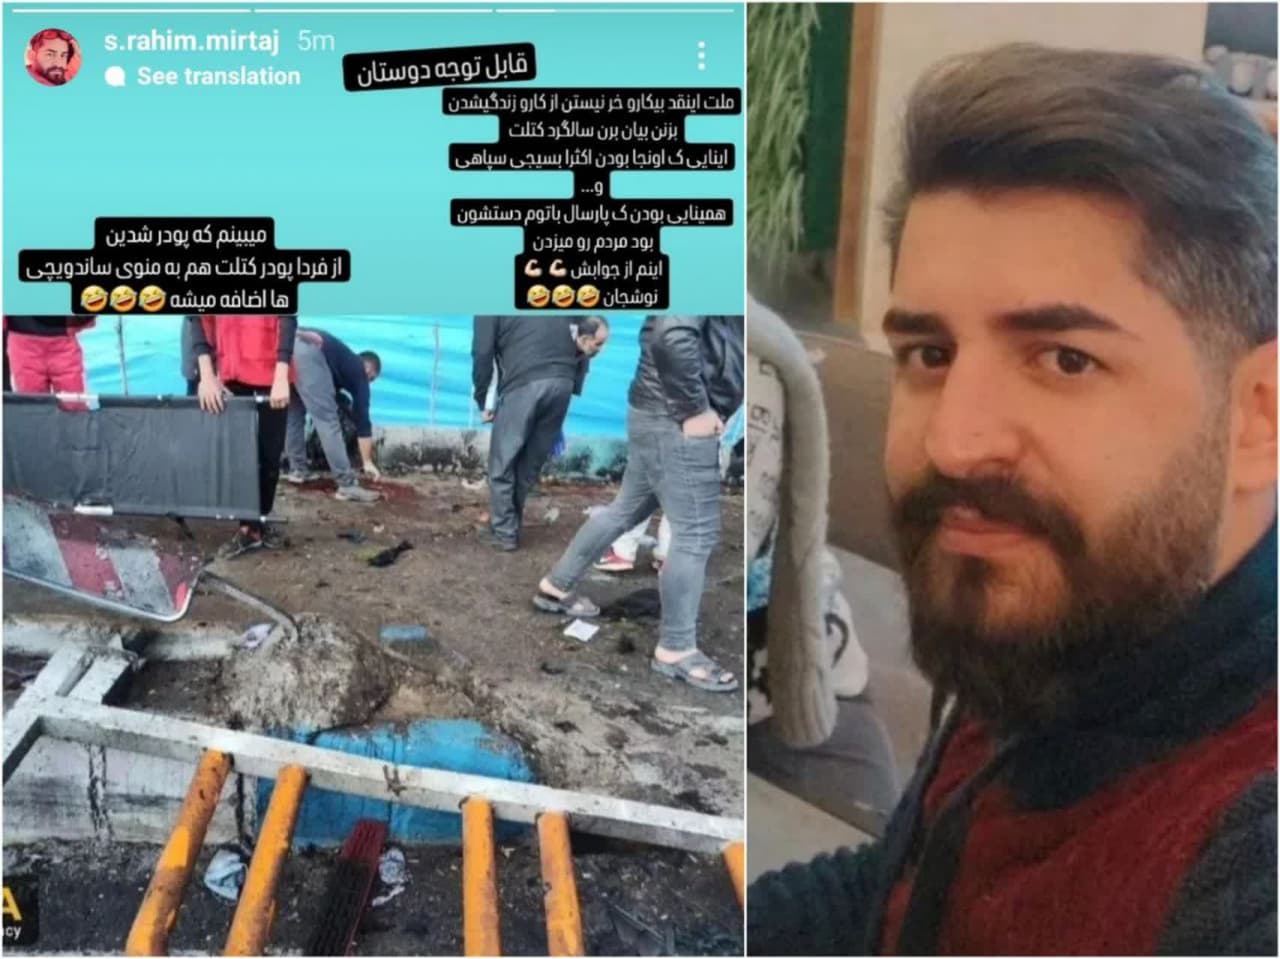 رحیم میرتاج الدینی، مهندس نقشه بردار، ساکن کرمان حامی داعش و تروریسم